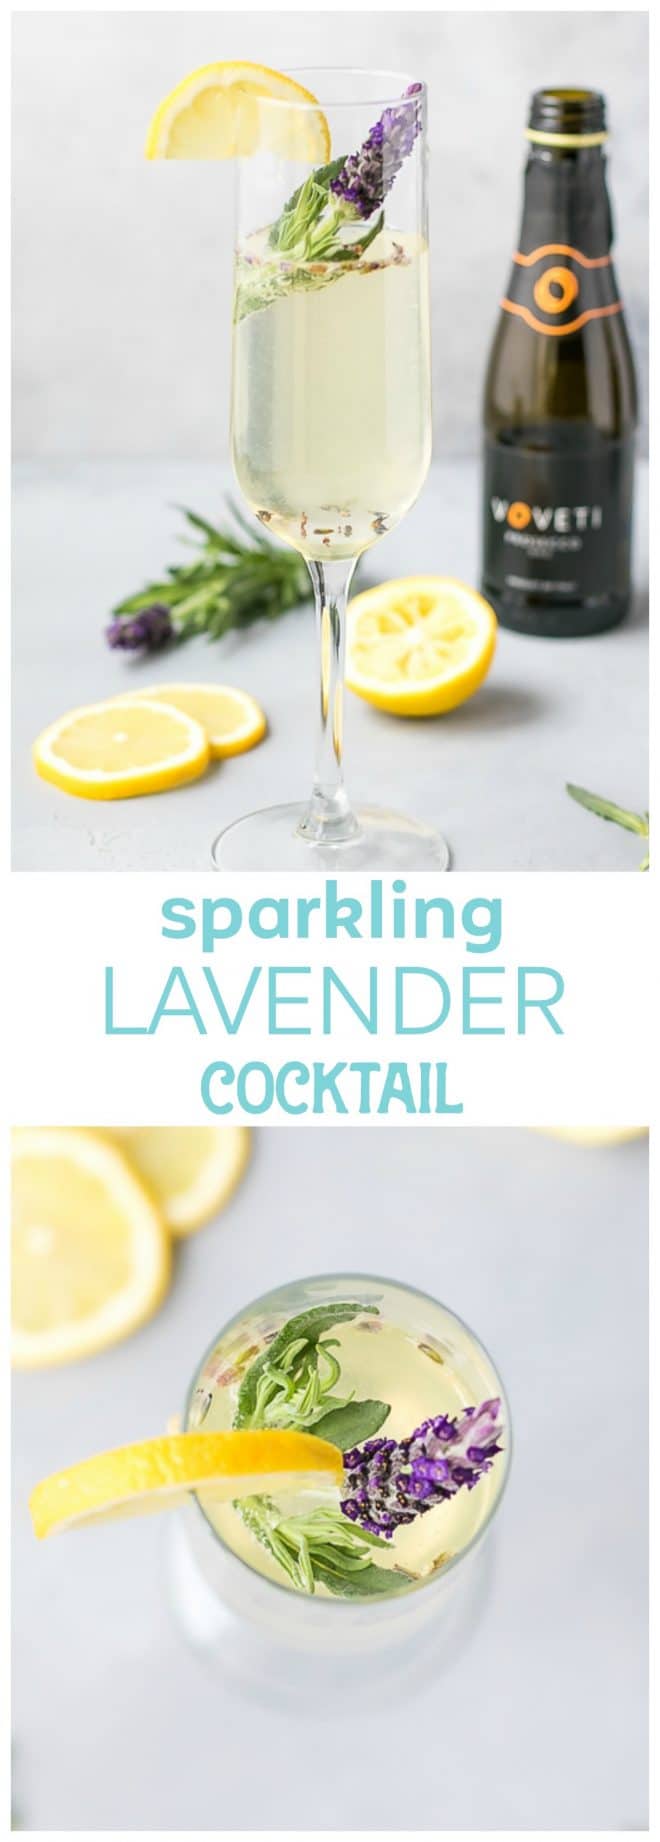 Sparkling lavender cocktail